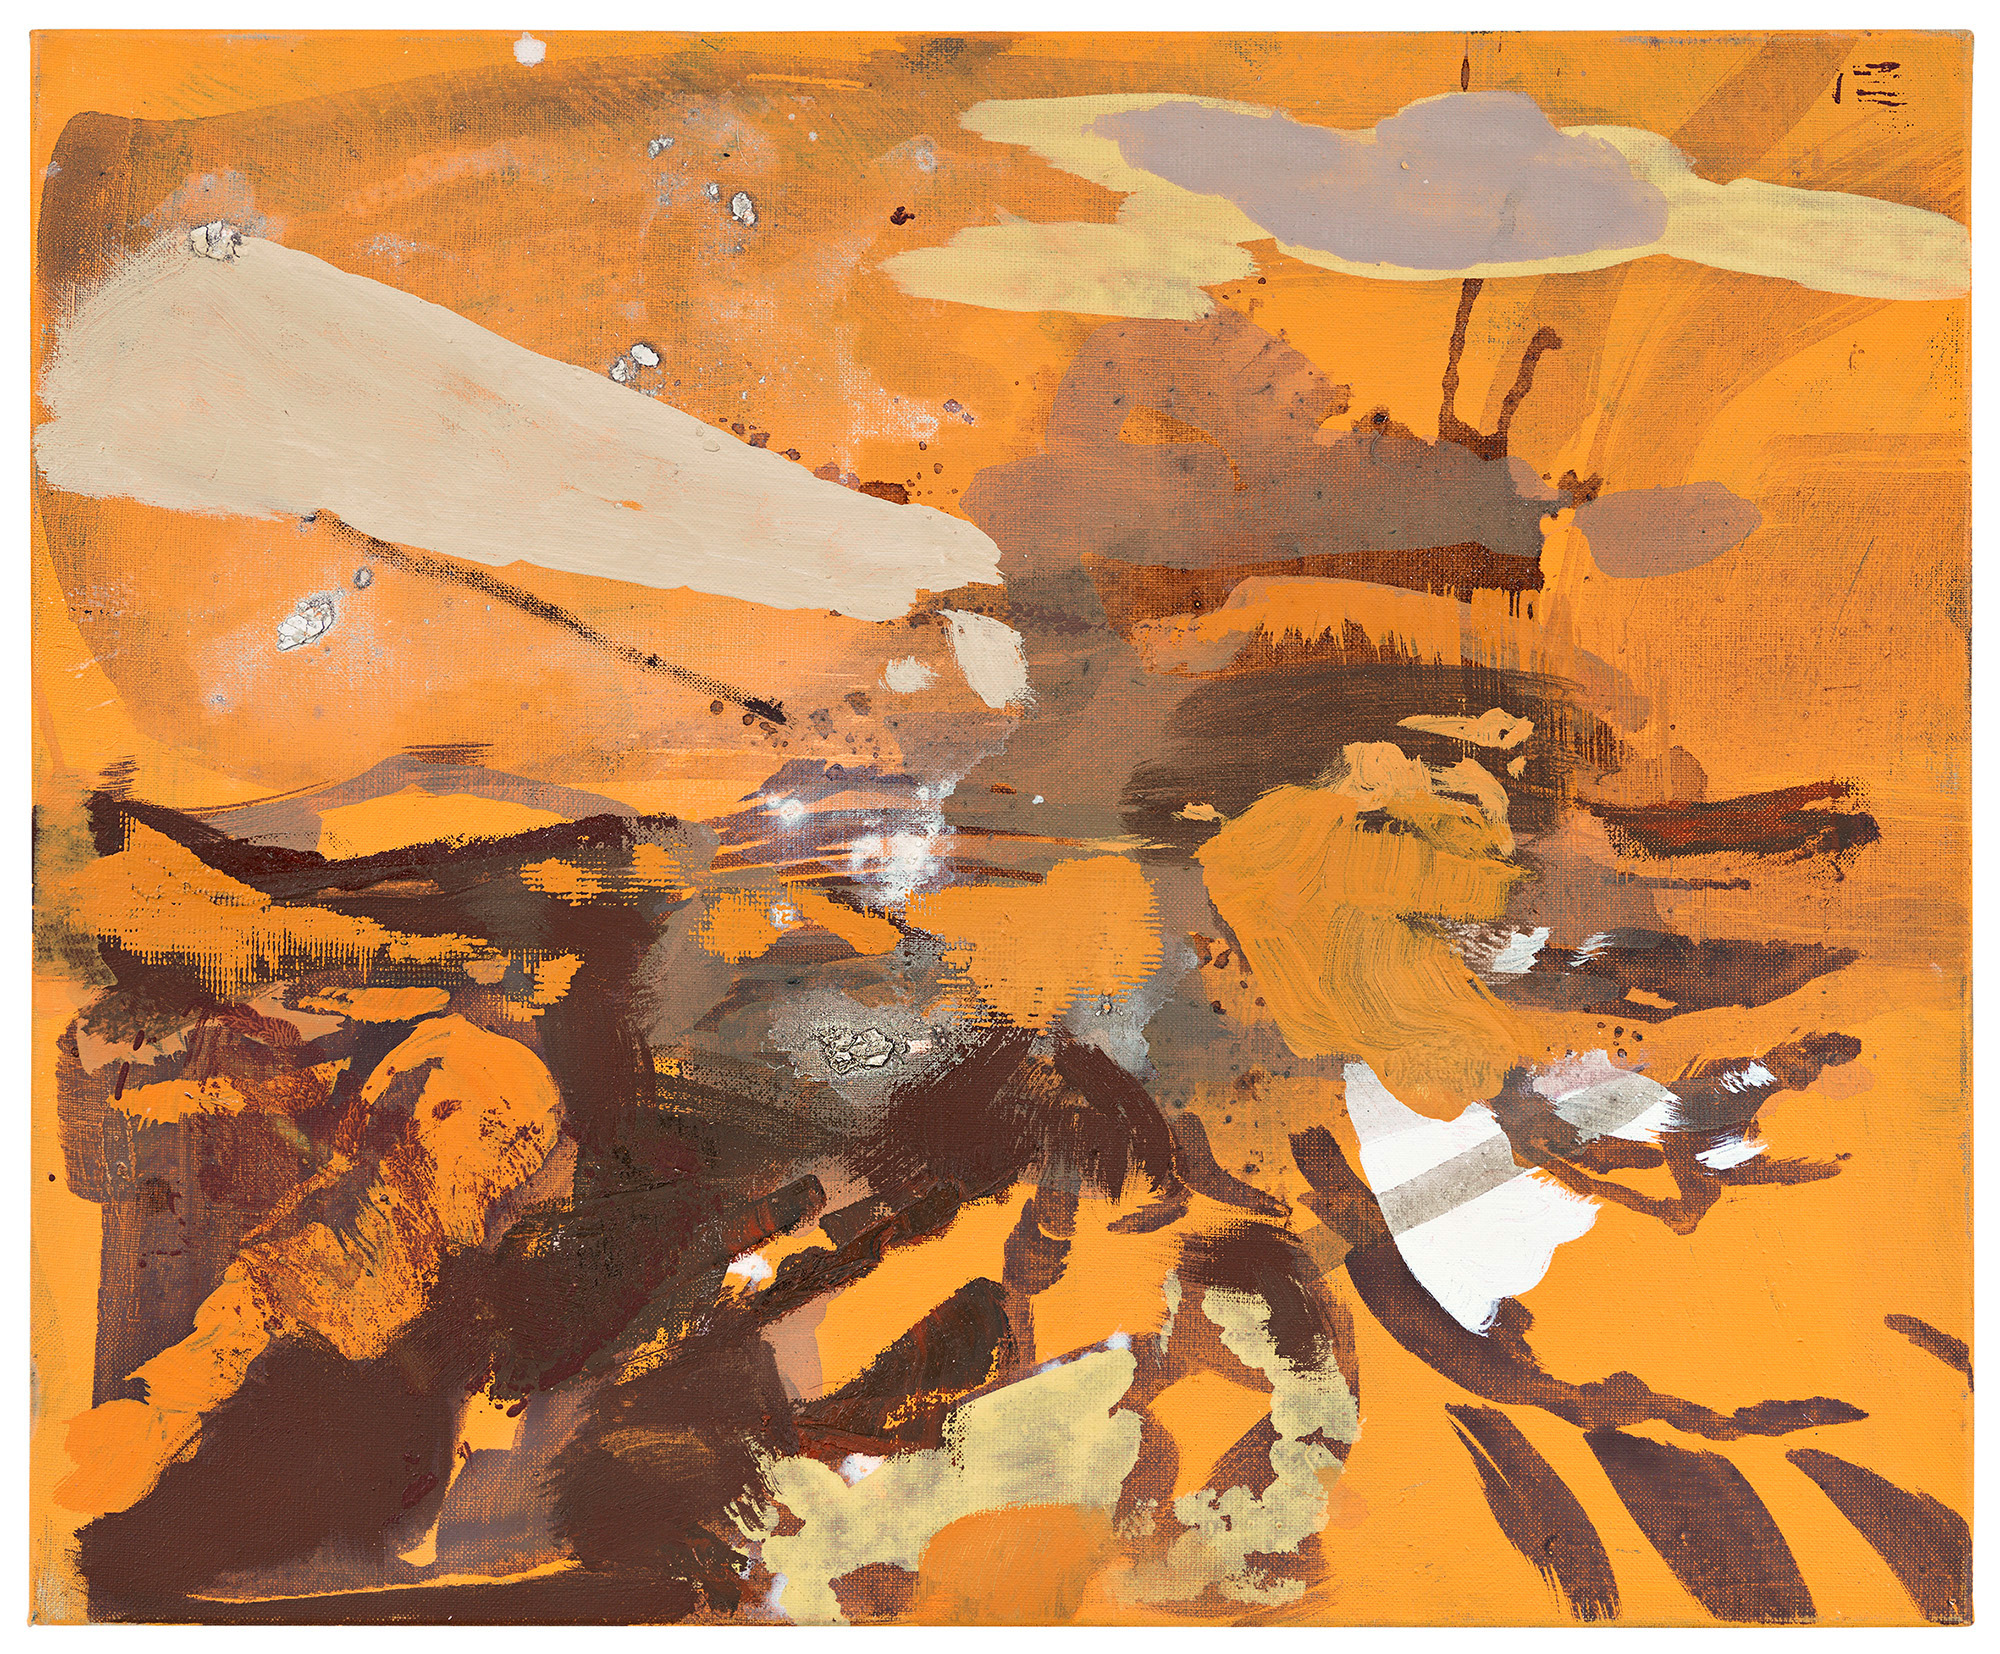 Maki Na Kamura, La Guerre X, 2021, oil, egg tempera on canvas, 50 x 60 cm